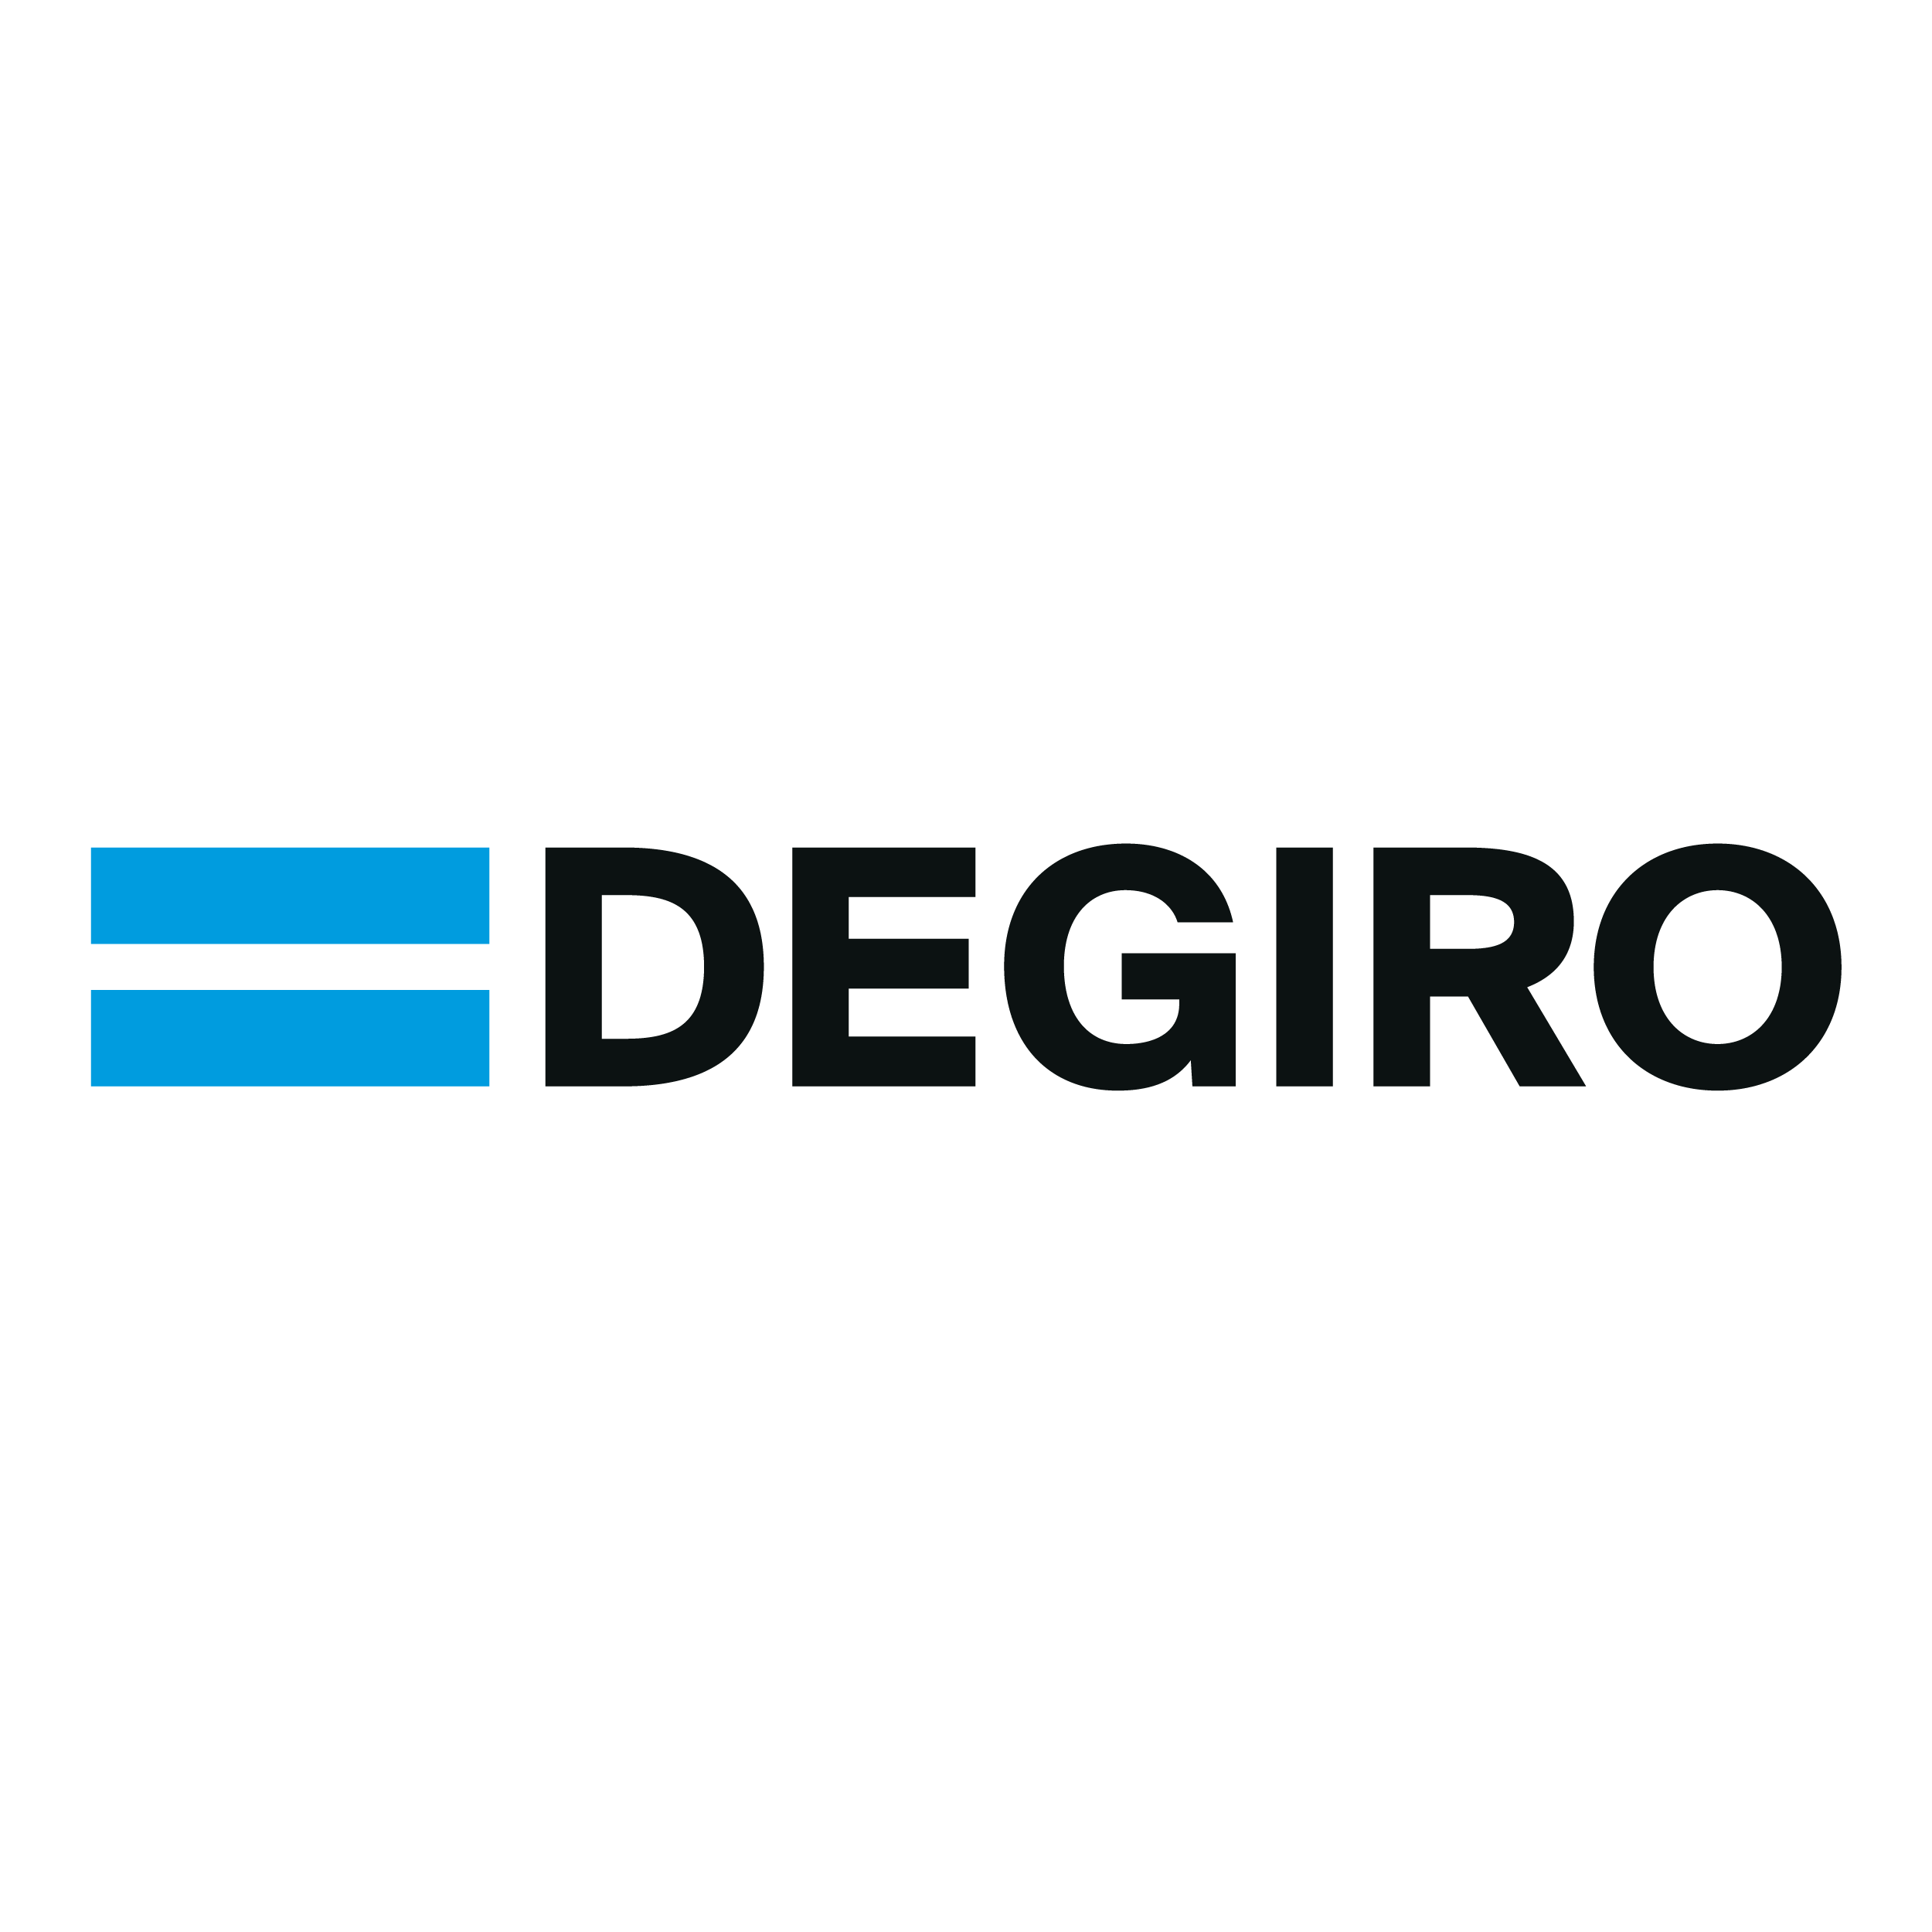 Vi har tidigare berättat att holländska DEGIRO låter sina kunder handla amerikanska aktier utan courtage. Nu tar detta företag nästa steg, vilket gör att du kan slipp växlingsavgifterna med DEGIRO.